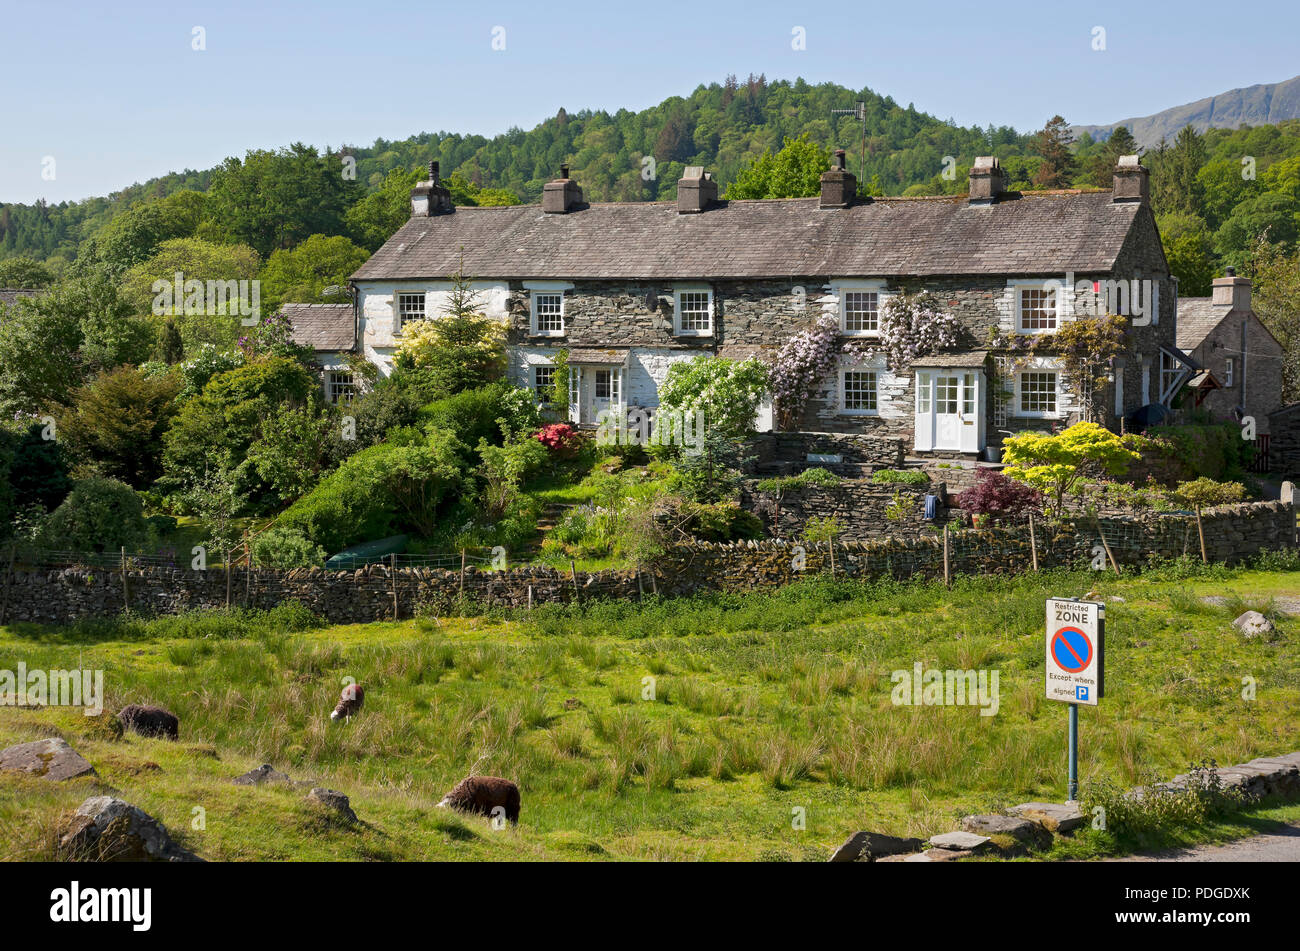 Reihe von Hütten Häuser Häuser im Sommer Elterwater Dorf Langdale Valley Cumbria England Vereinigtes Königreich GB Großbritannien Stockfoto